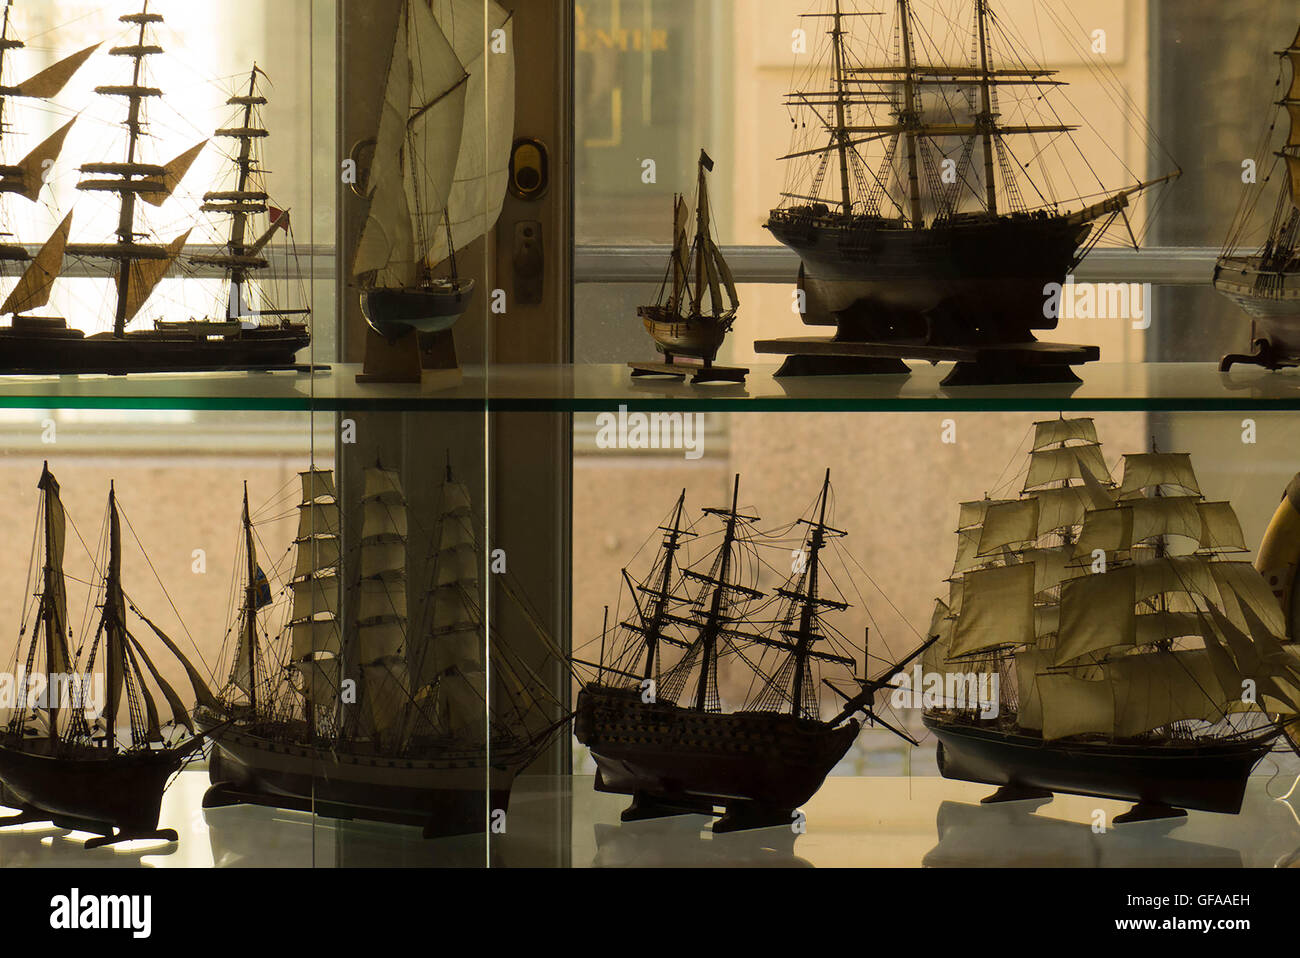 Maquettes de bateaux indiqués dans l'affichage de la fenêtre,Stockholm Suède Banque D'Images